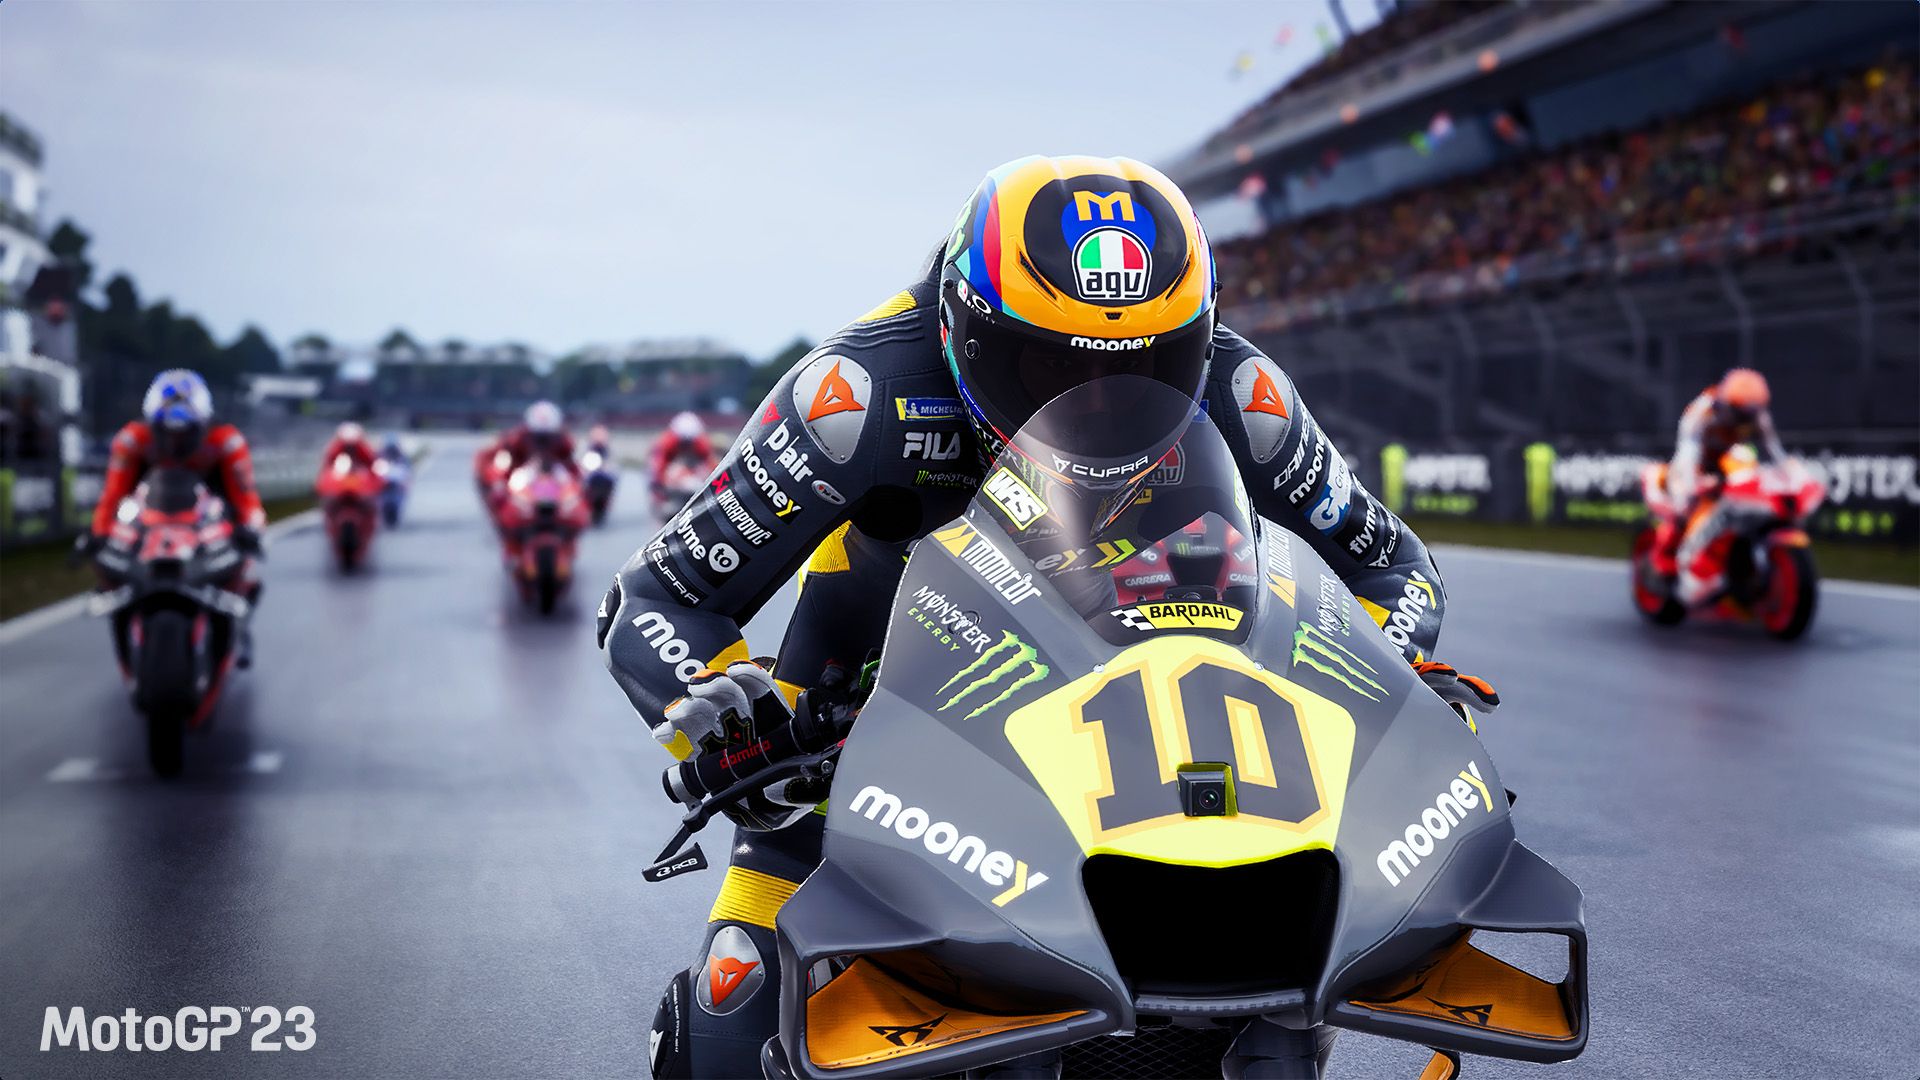 Tu viaje de carreras está a punto de comenzar con MotoGP 23, disponible el 8 de junio